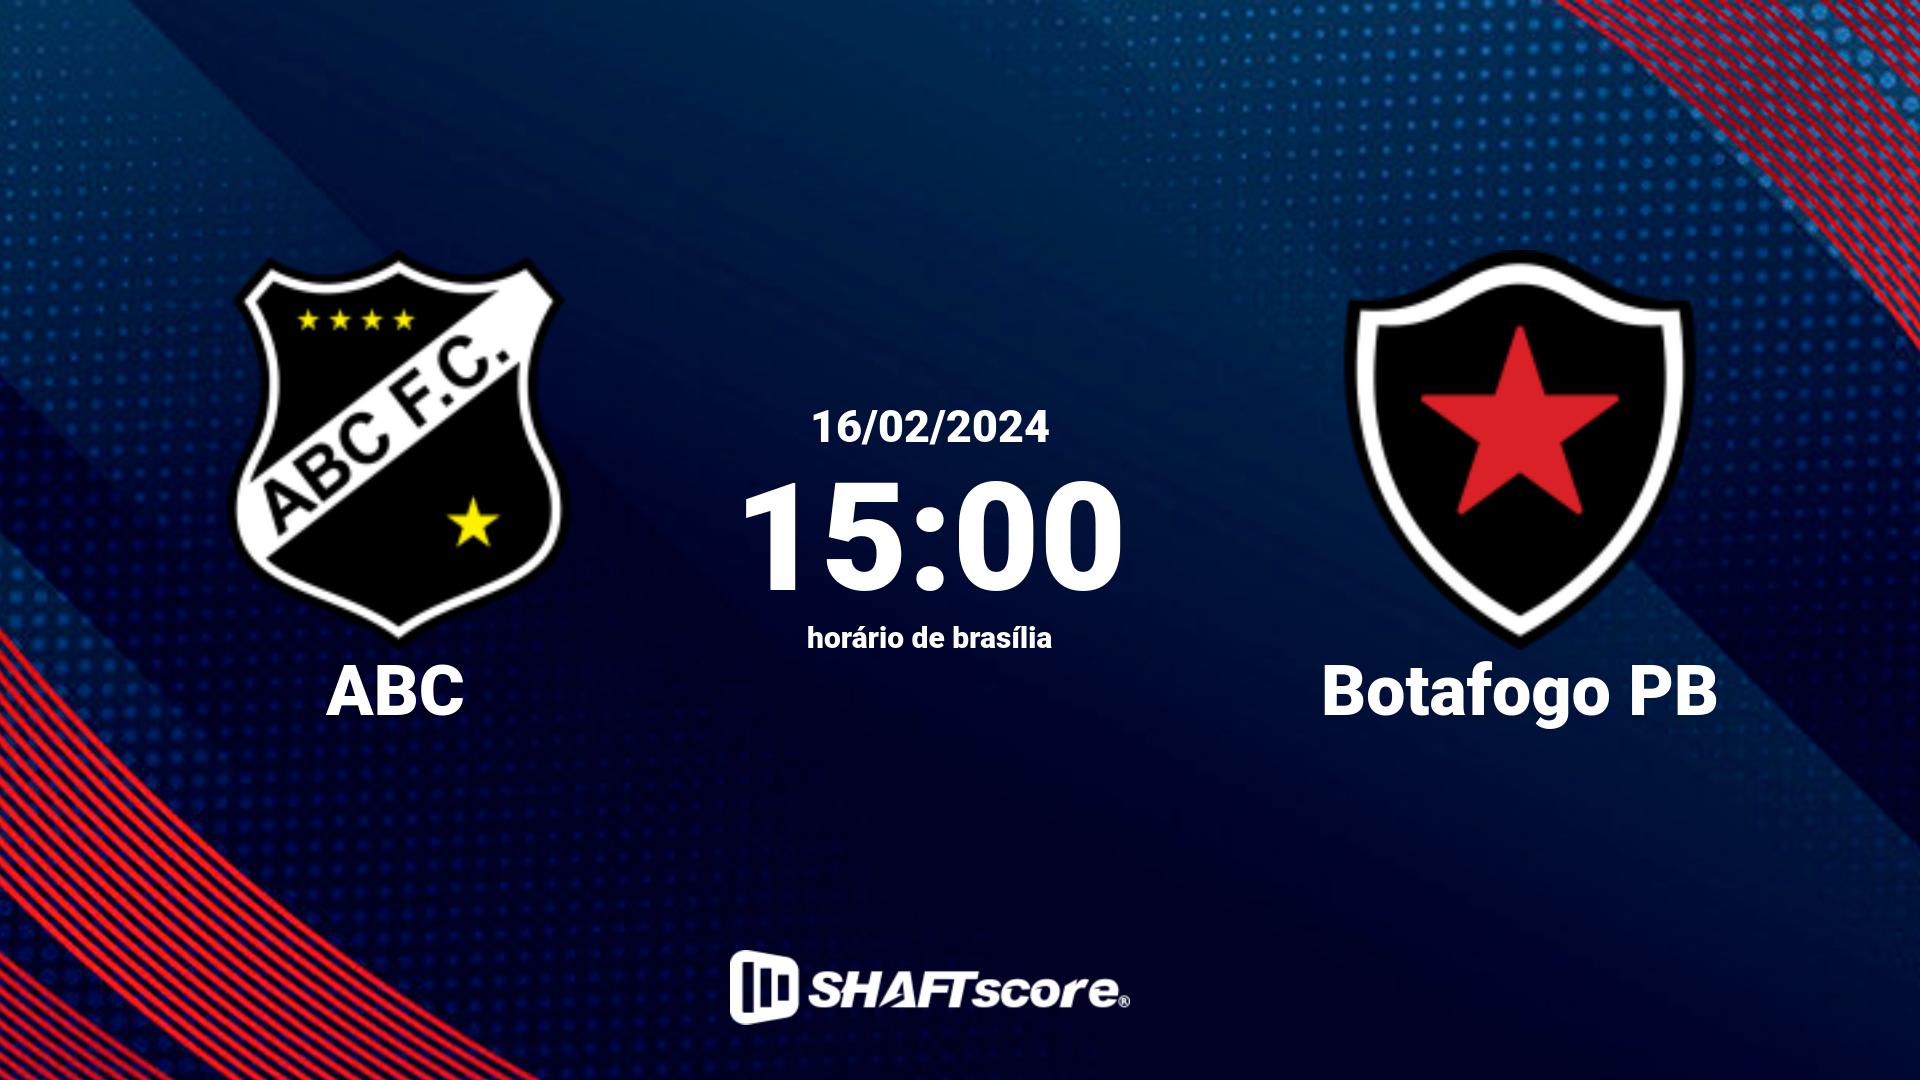 Estatísticas do jogo ABC vs Botafogo PB 16.02 15:00